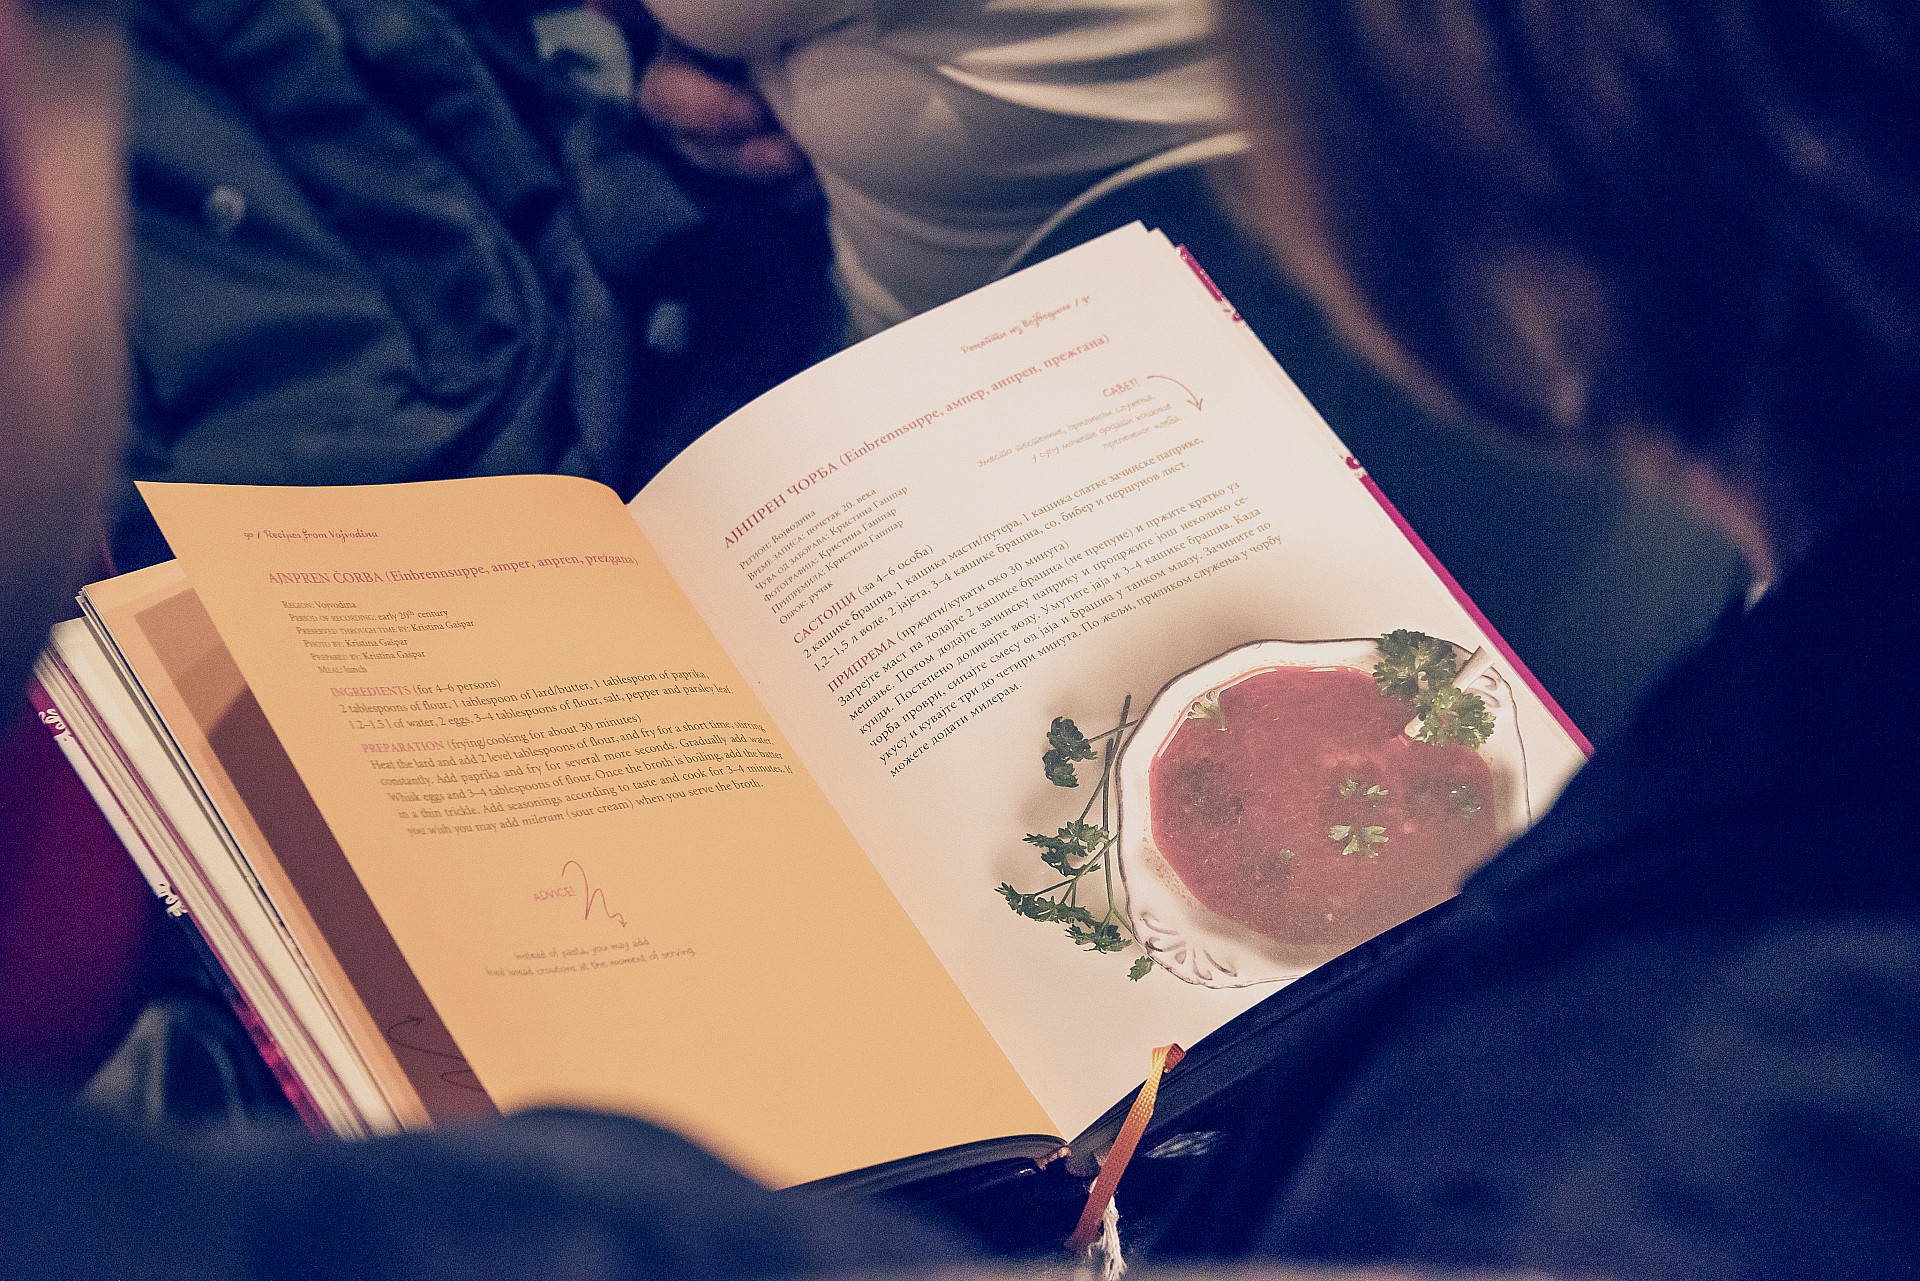 Aidez-nous à publier la deuxième édition du livre "Recettes traditionnelles de la cuisine serbe"